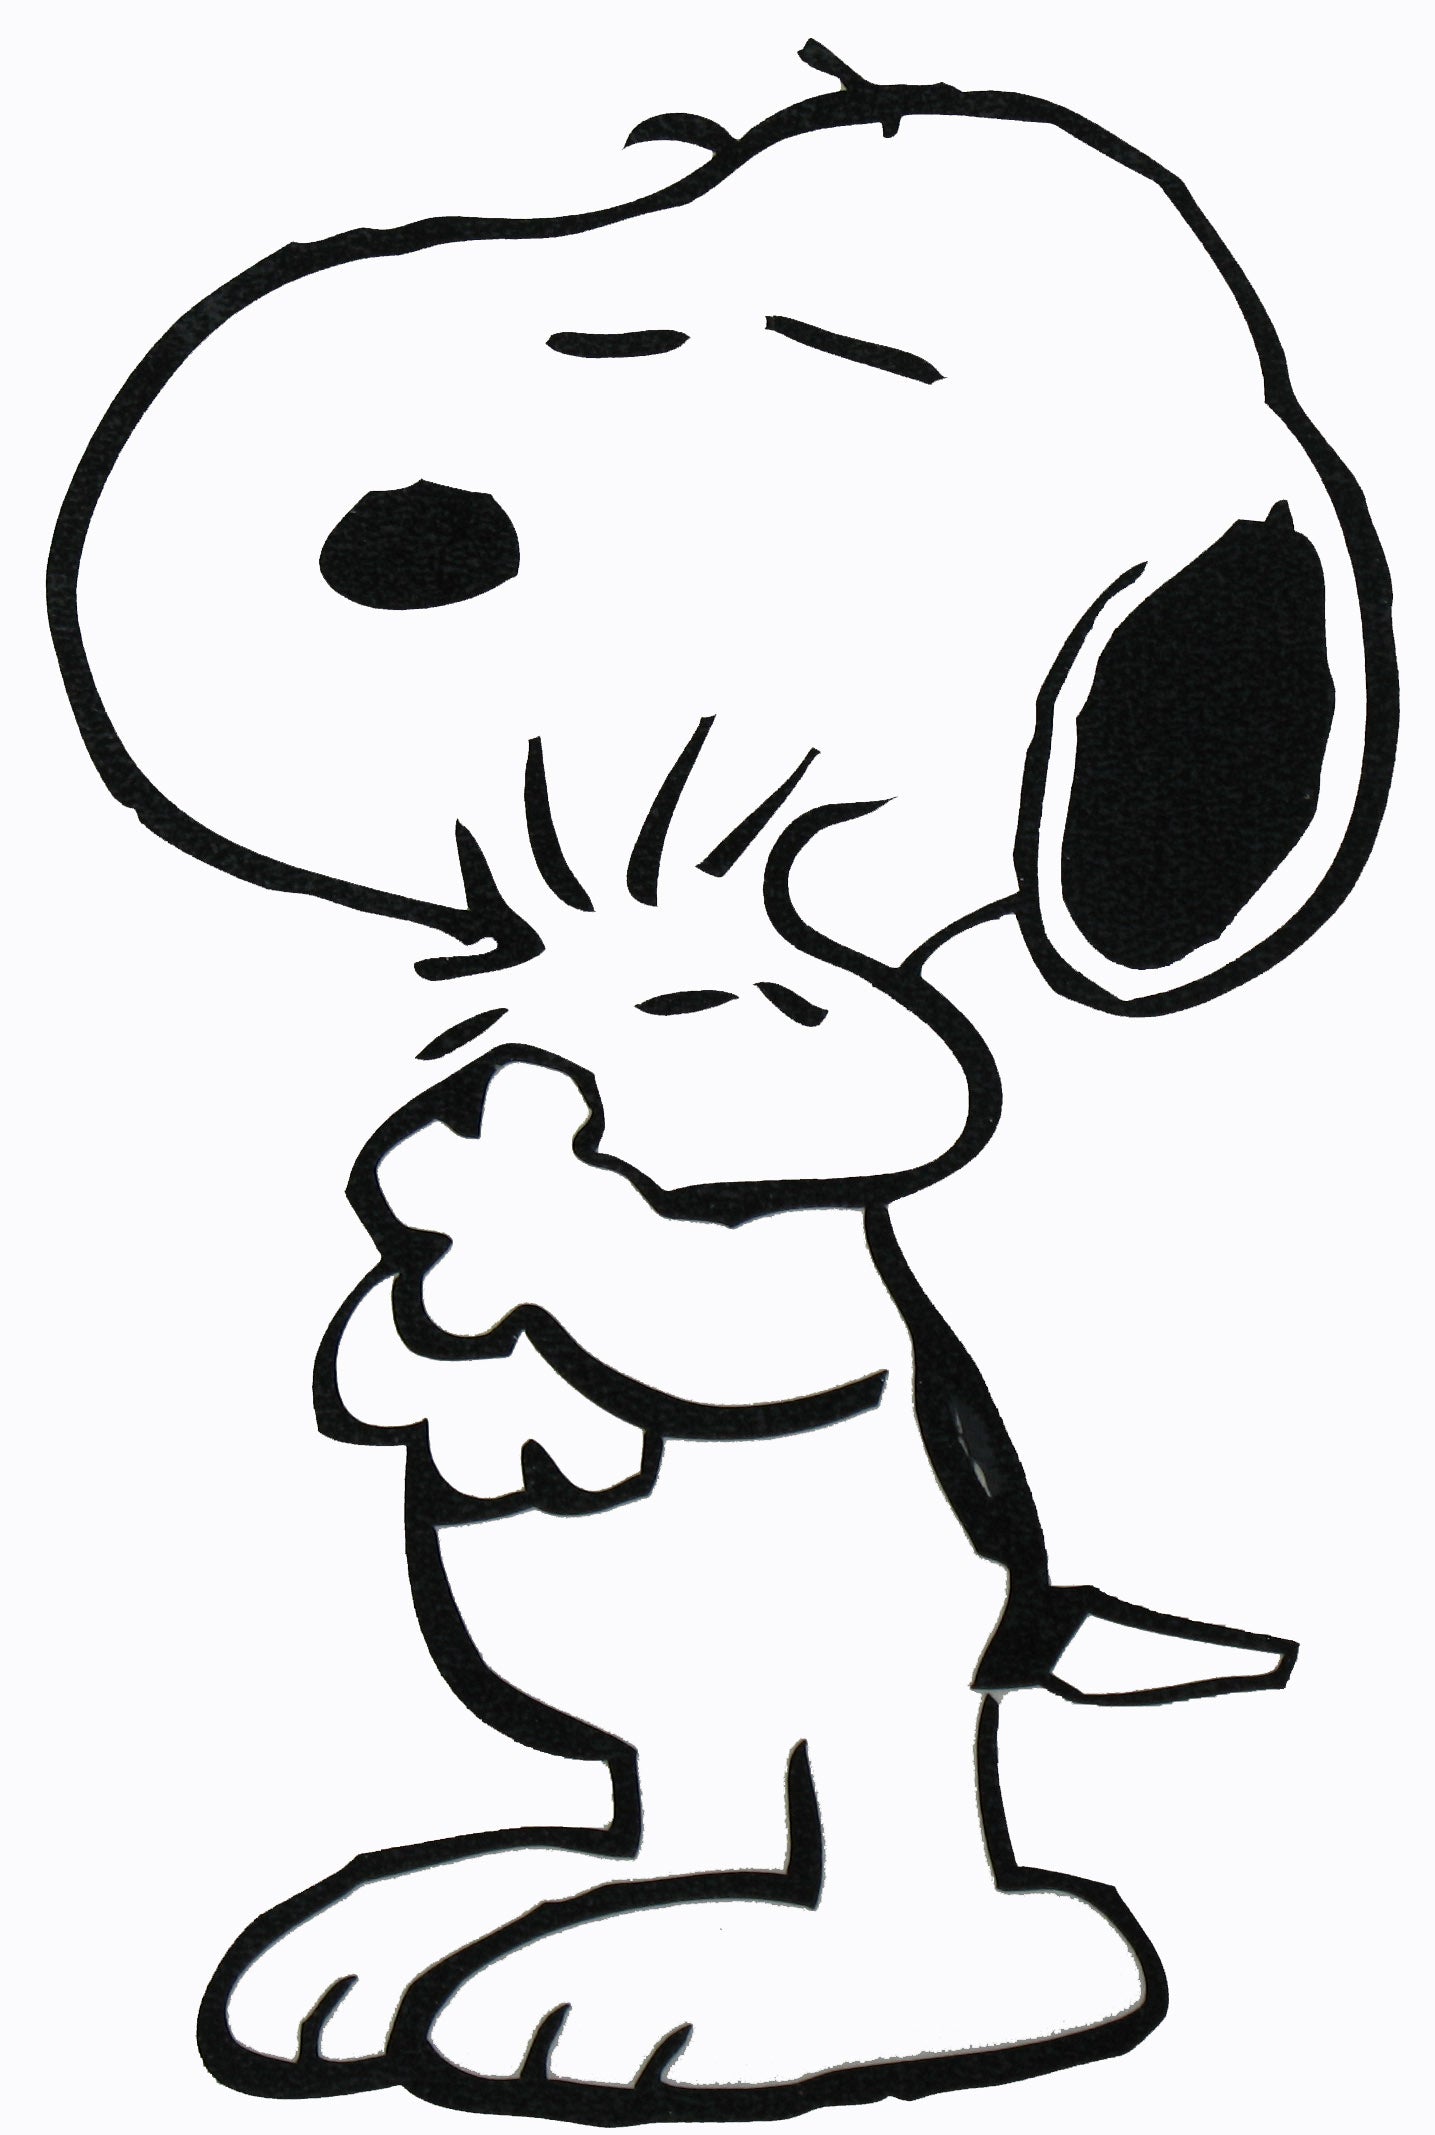 Snoopy Hugs Woodstock Die-Cut Vinyl Decal - Black | snoopn4pnuts.com